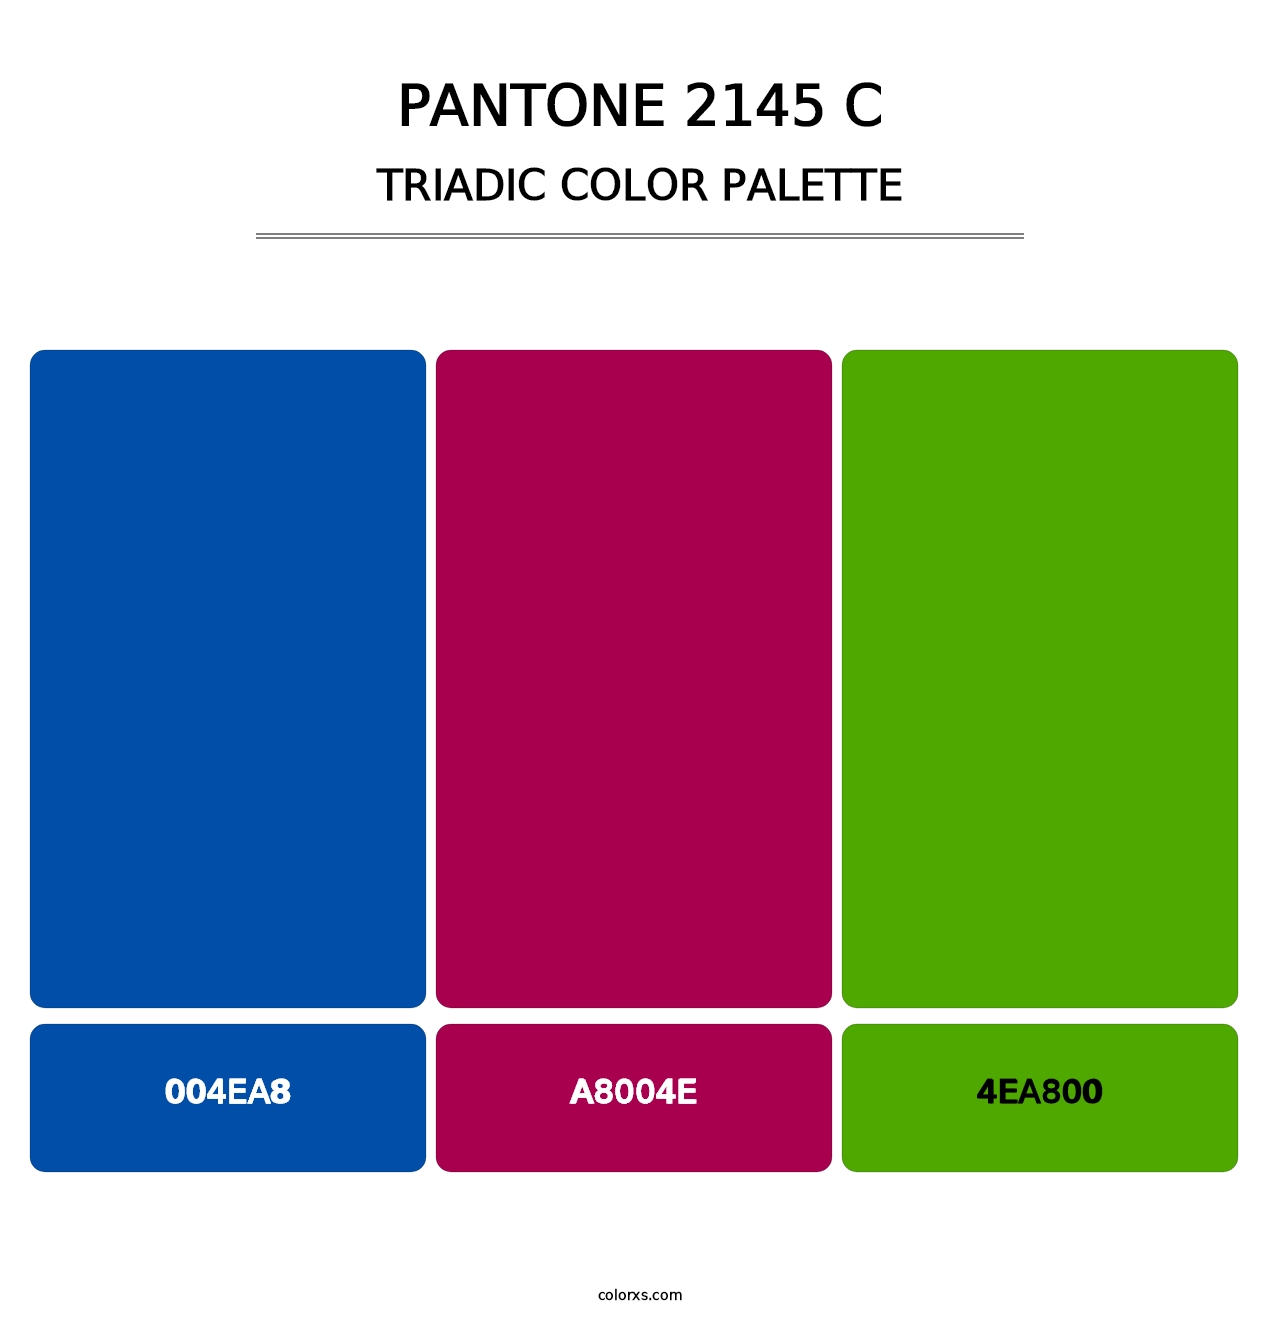 PANTONE 2145 C - Triadic Color Palette